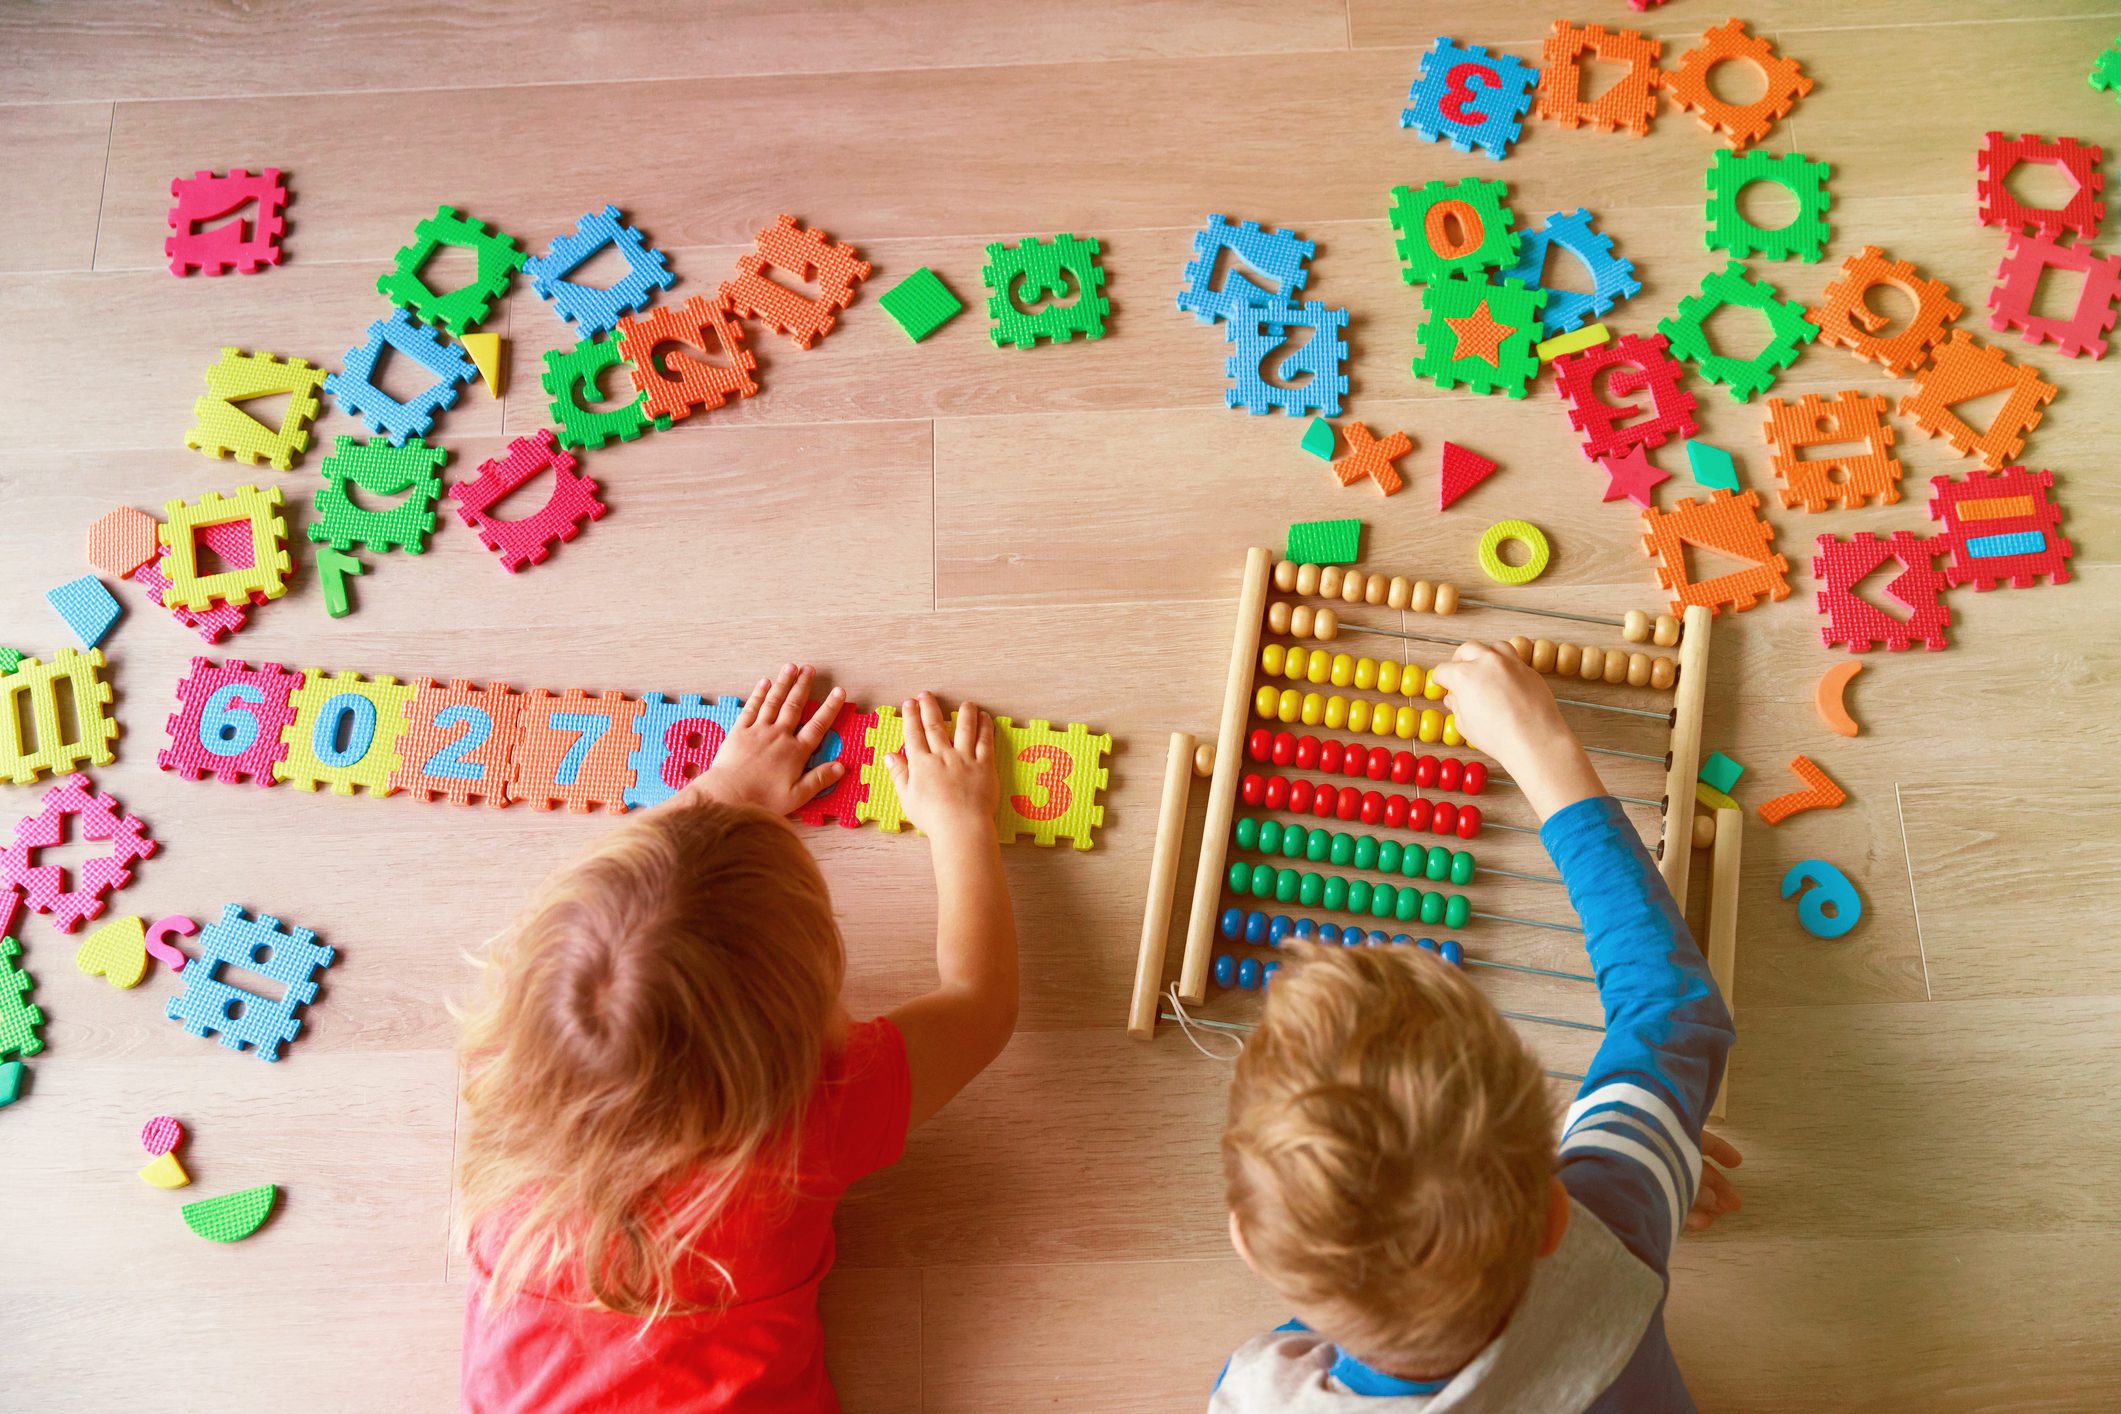 Maths Activities for Preschoolers